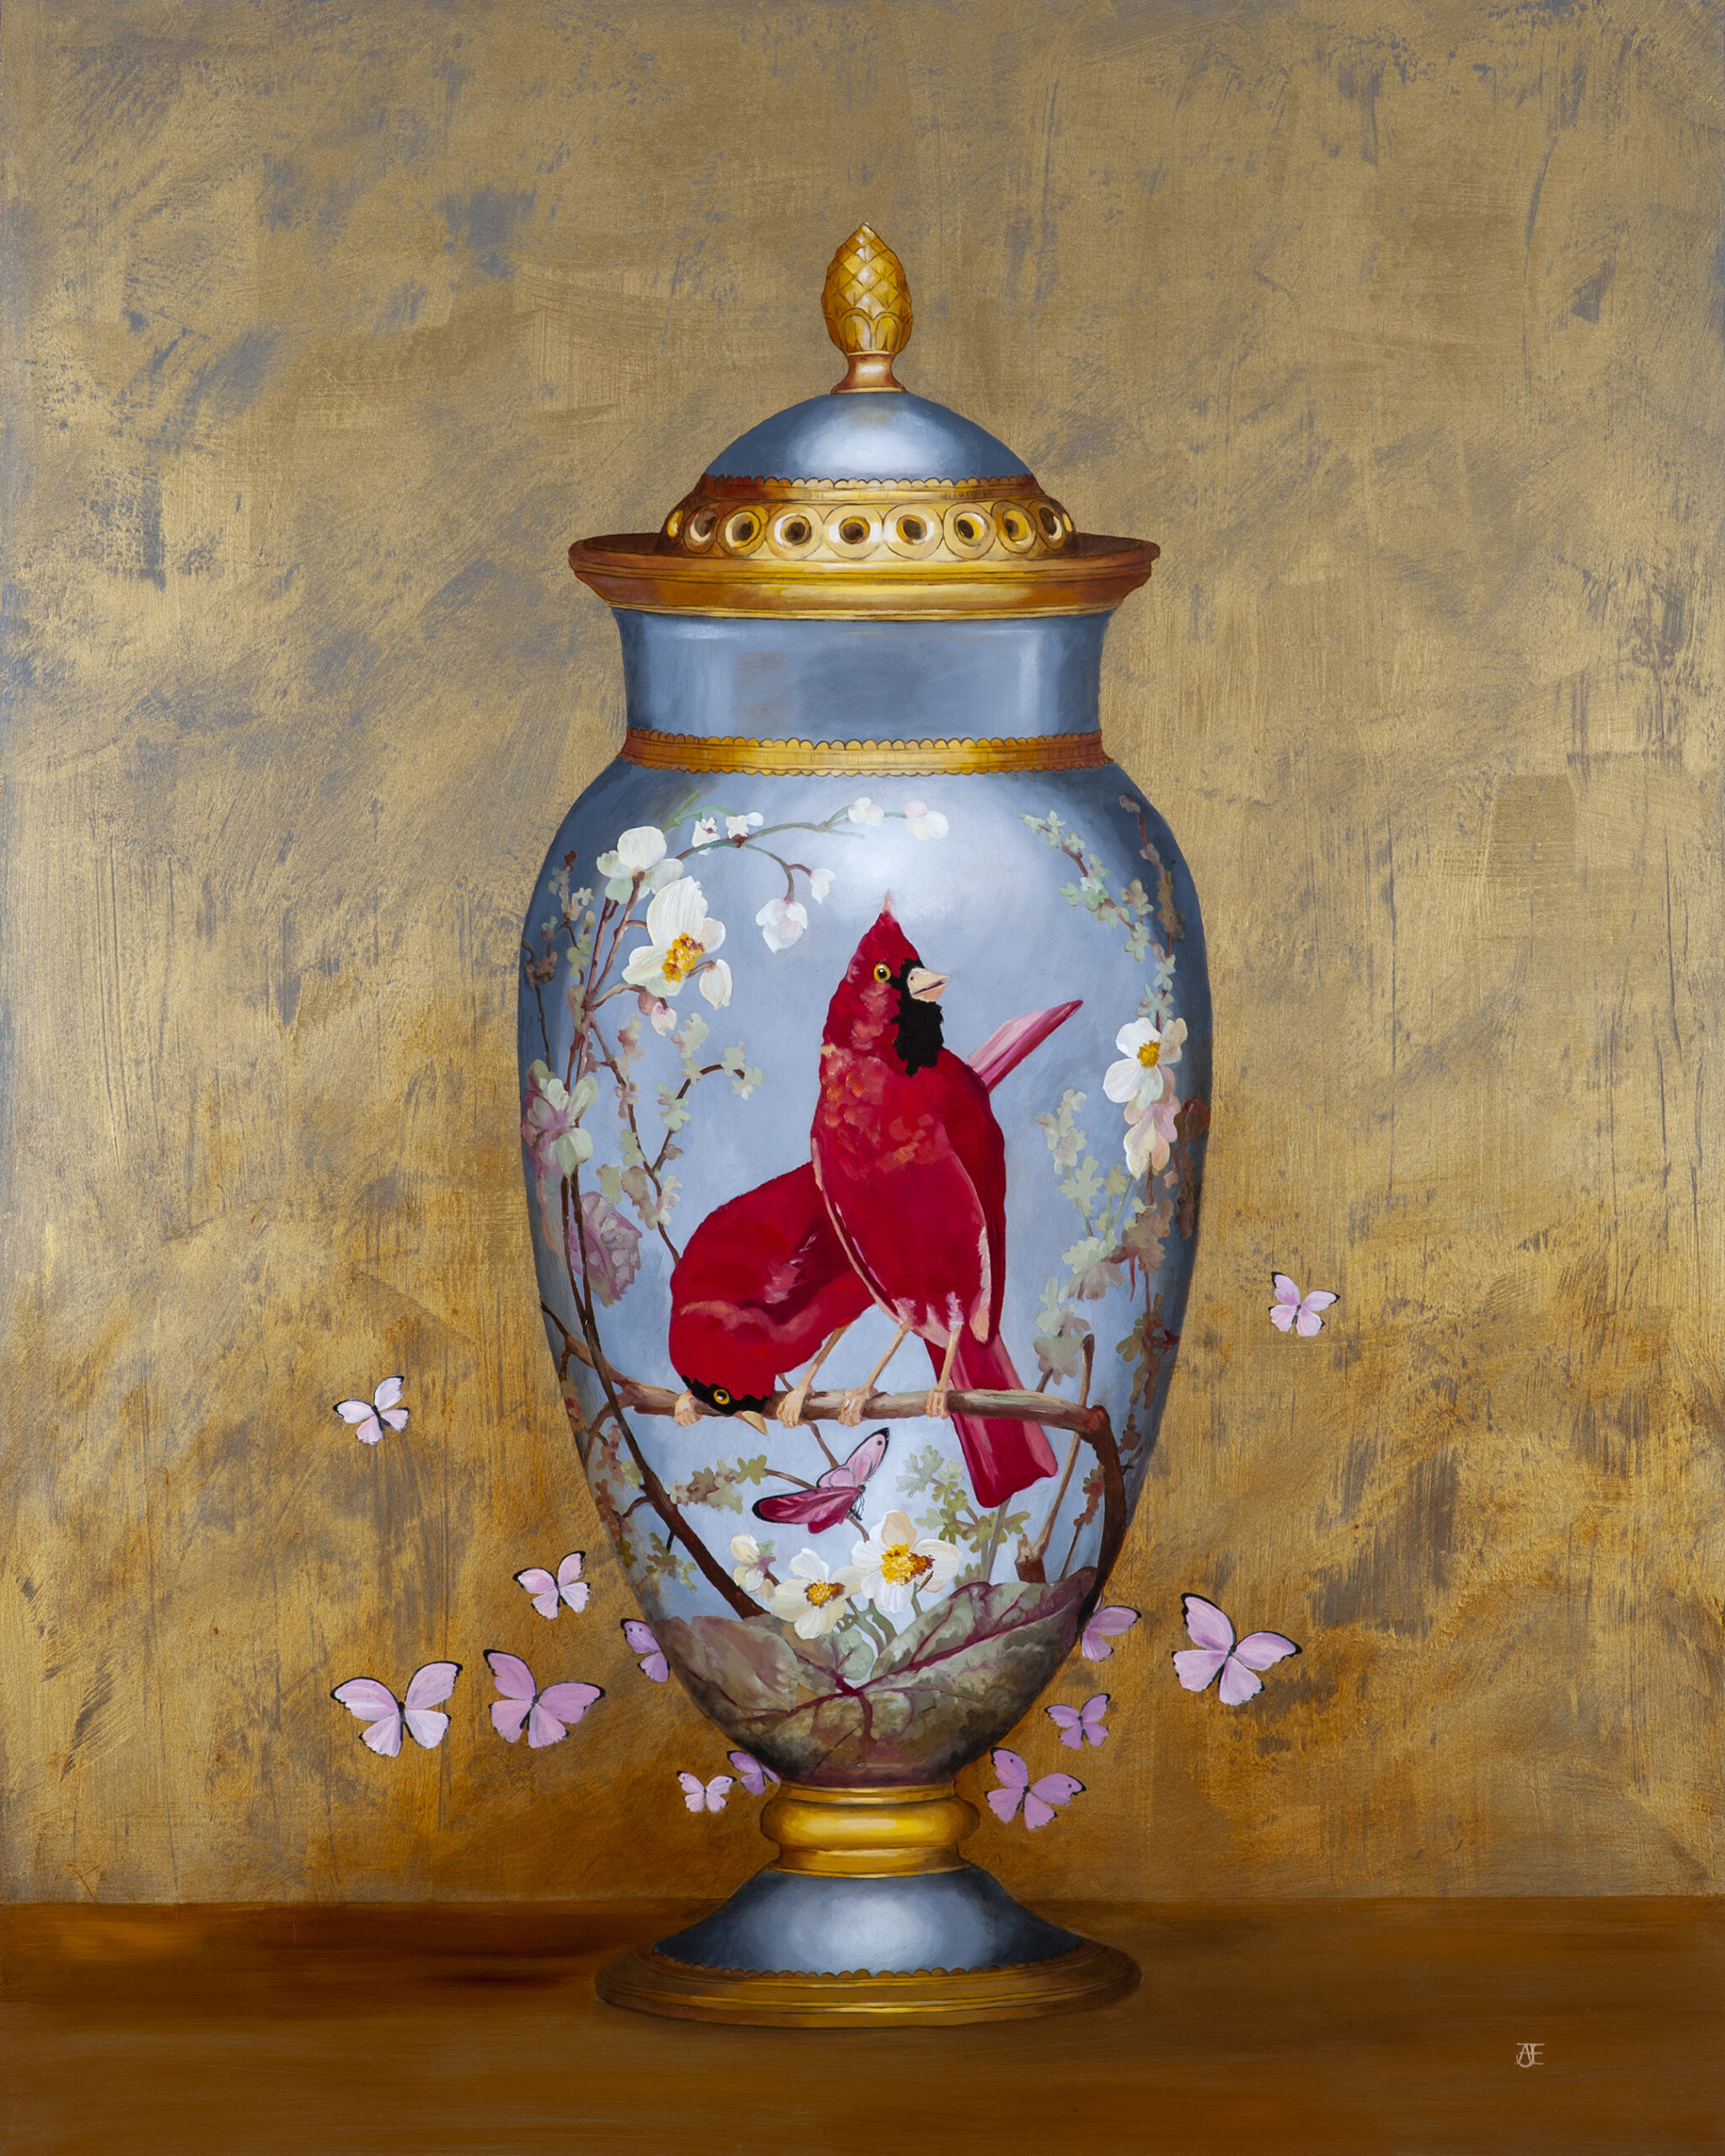 Een olieverfportret op een paneel van 80 x 100 cm, toont een Chinese vaas met twee prachtige rode vogels op een tak van een kersenbloesem, rond de vaas fladderen roze geschilderde vlinders. De achtergrond is geschilderd in goudbruine tinten met een lichte textuur. Dit vrije kunstwerk is in 2021 geschilderd door Anneke Ensing.